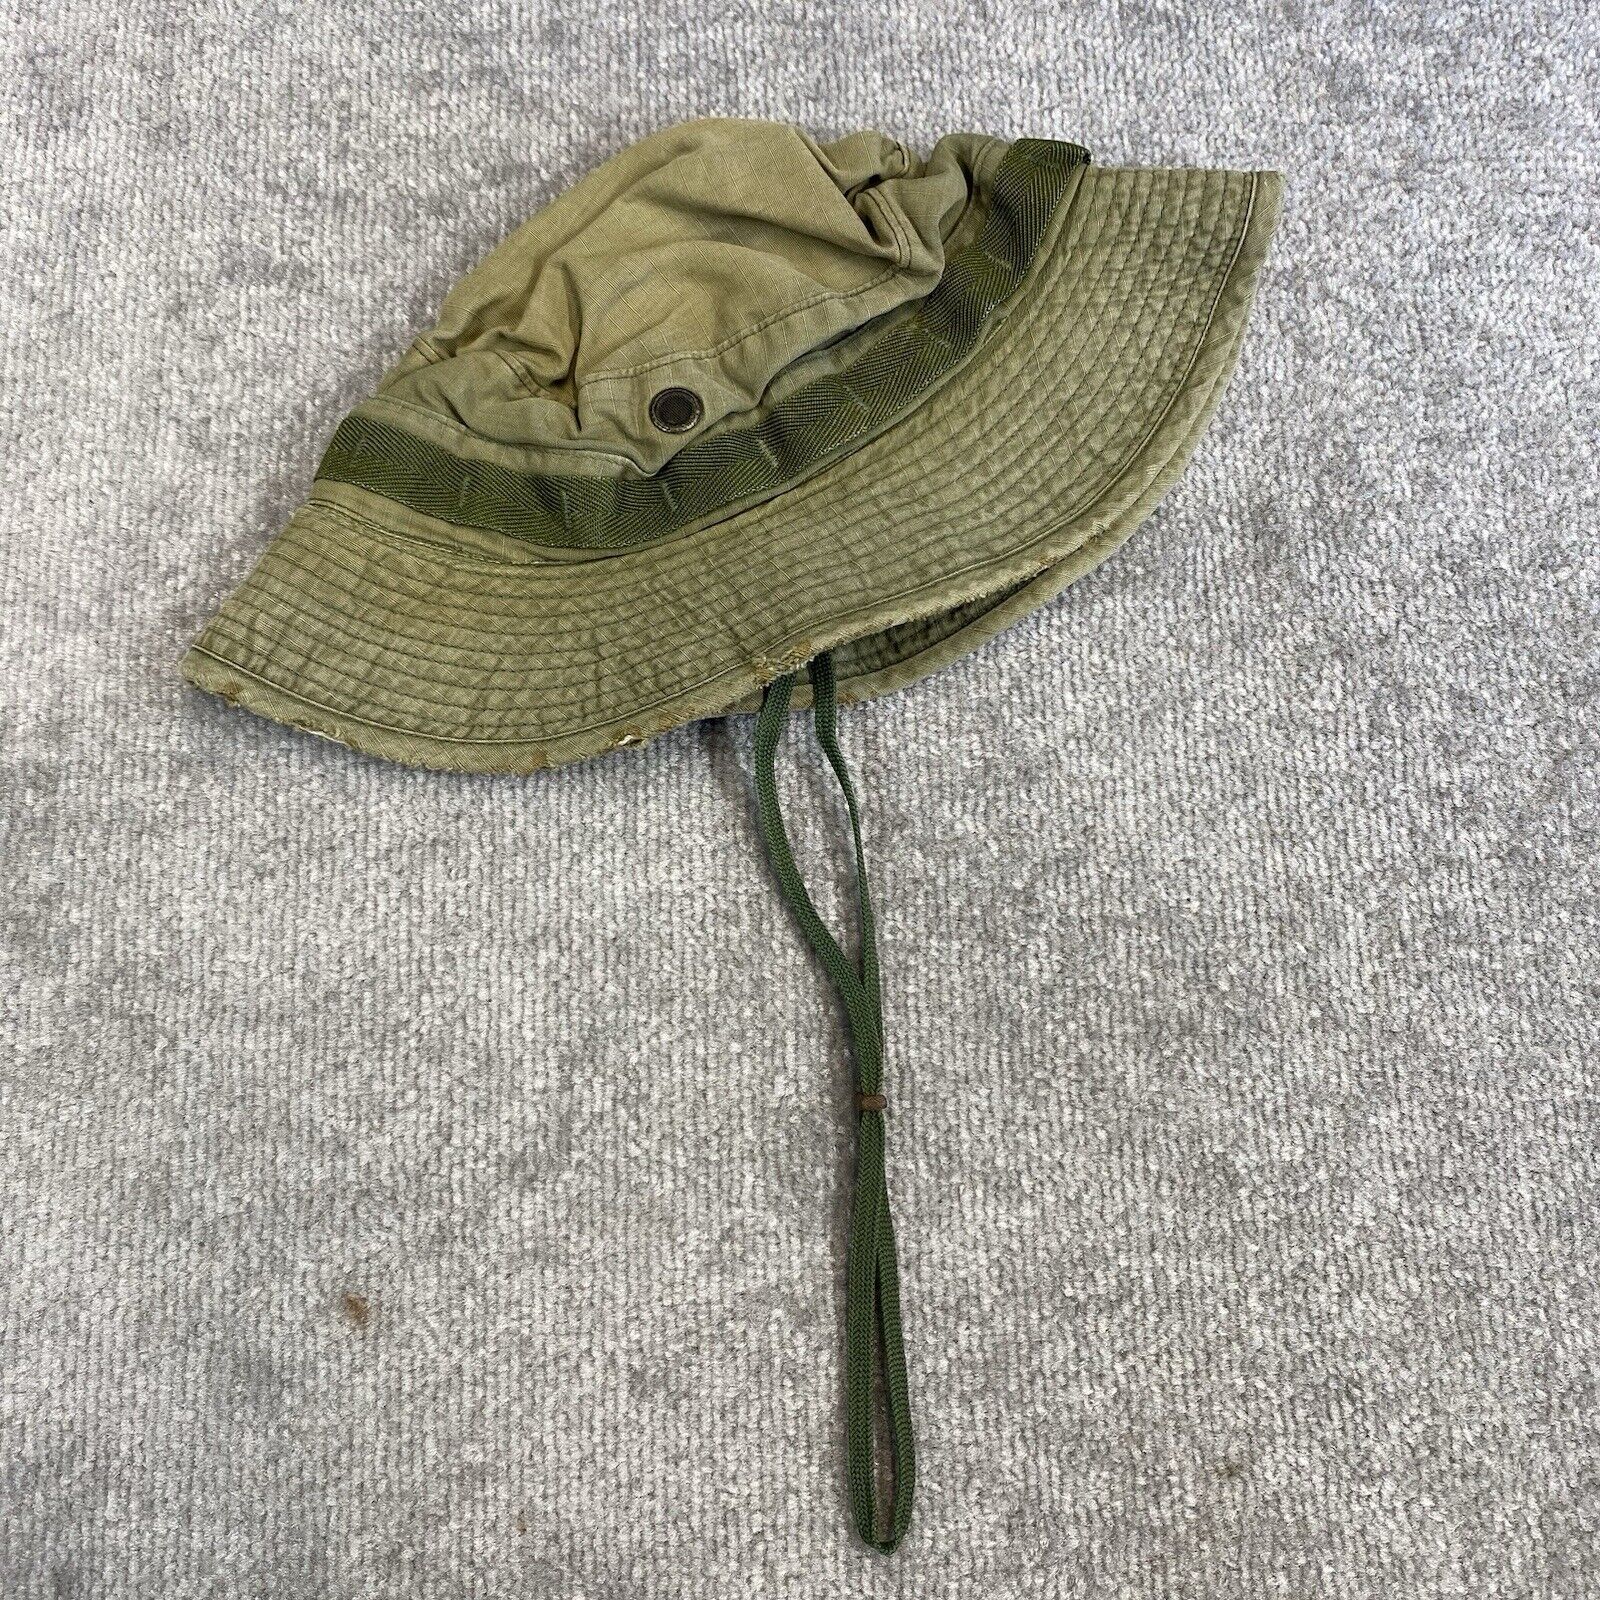 Vintage US OG107 Vietnam Boonie Sun Hat Army Green Size 7 1/4